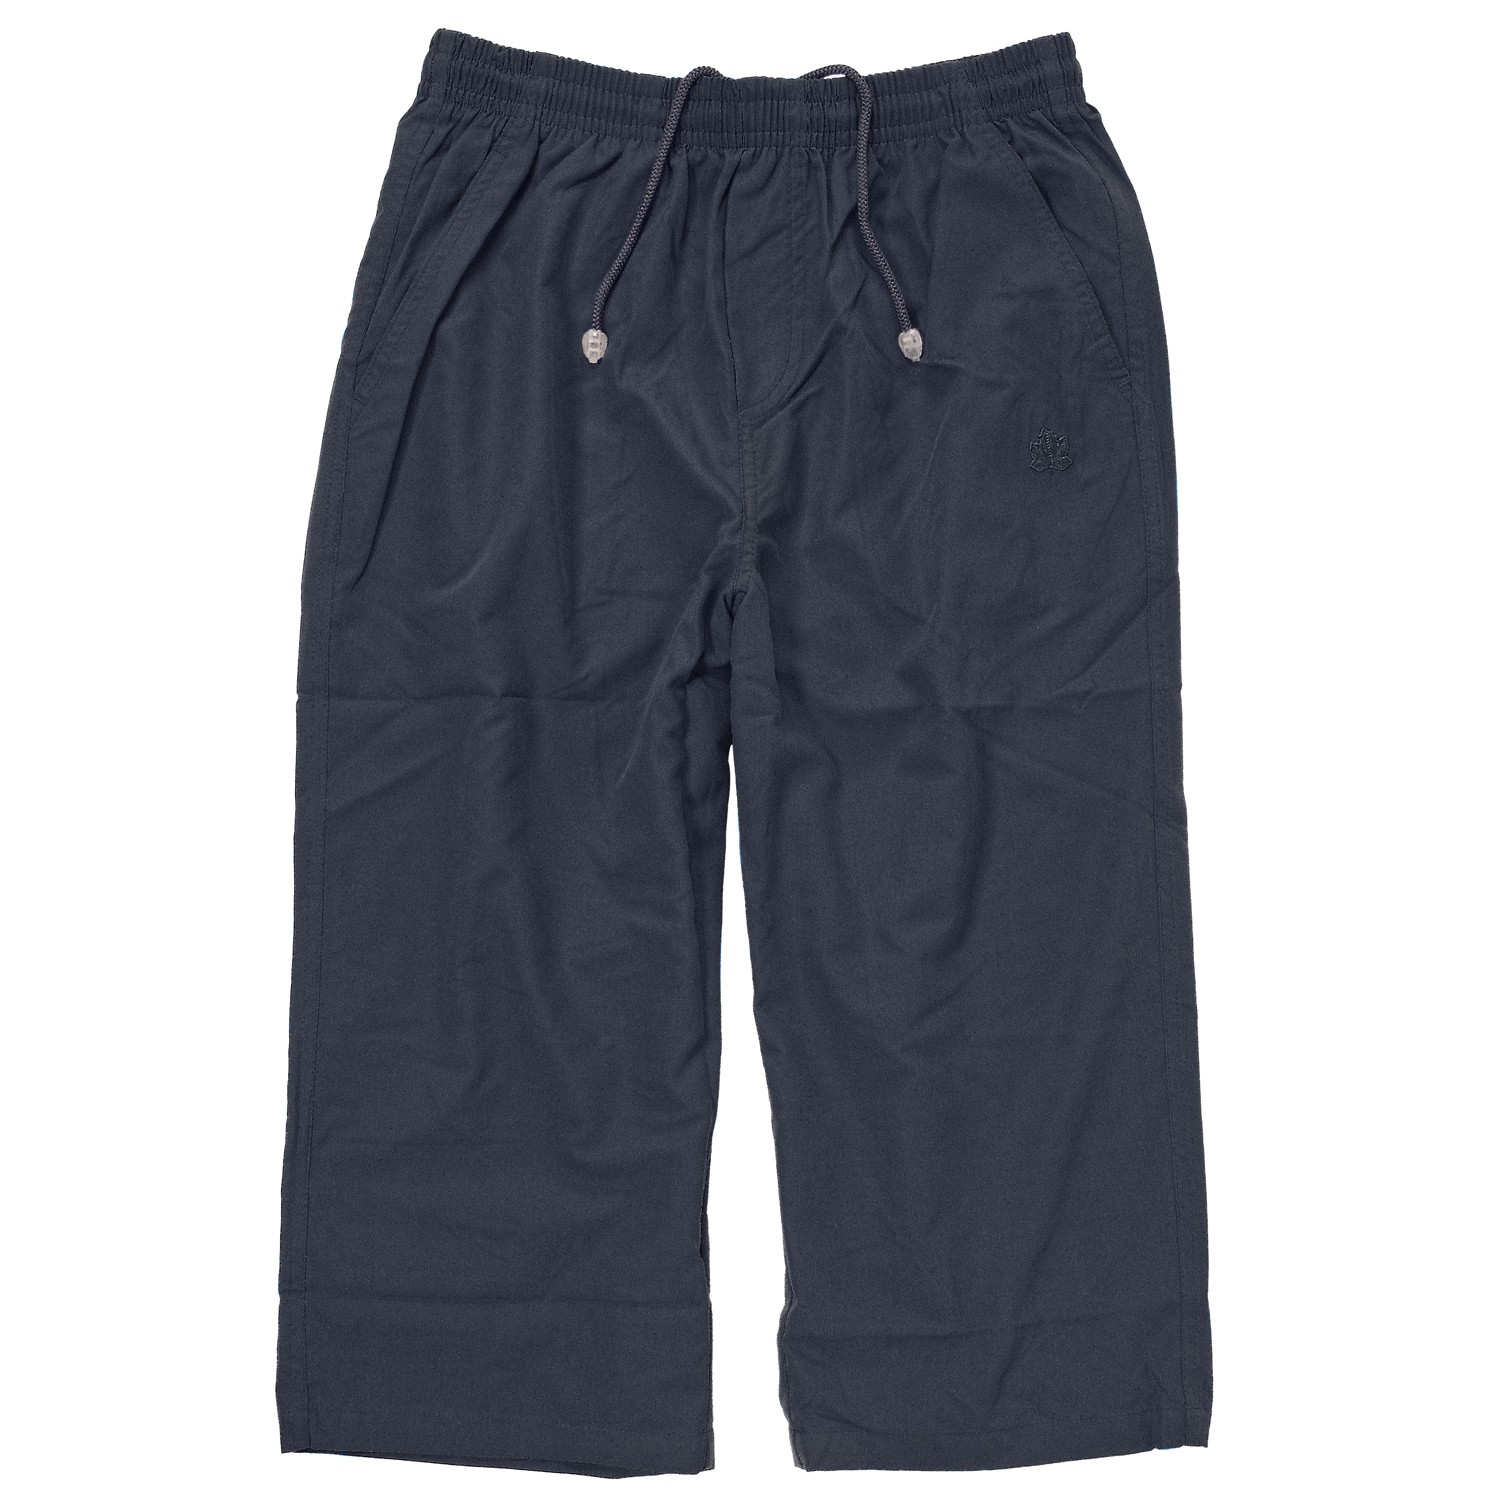 Pantalon 3/4 de sport bleu foncé by Ahorn Sportswear // grandes tailles jusqu'au 10XL